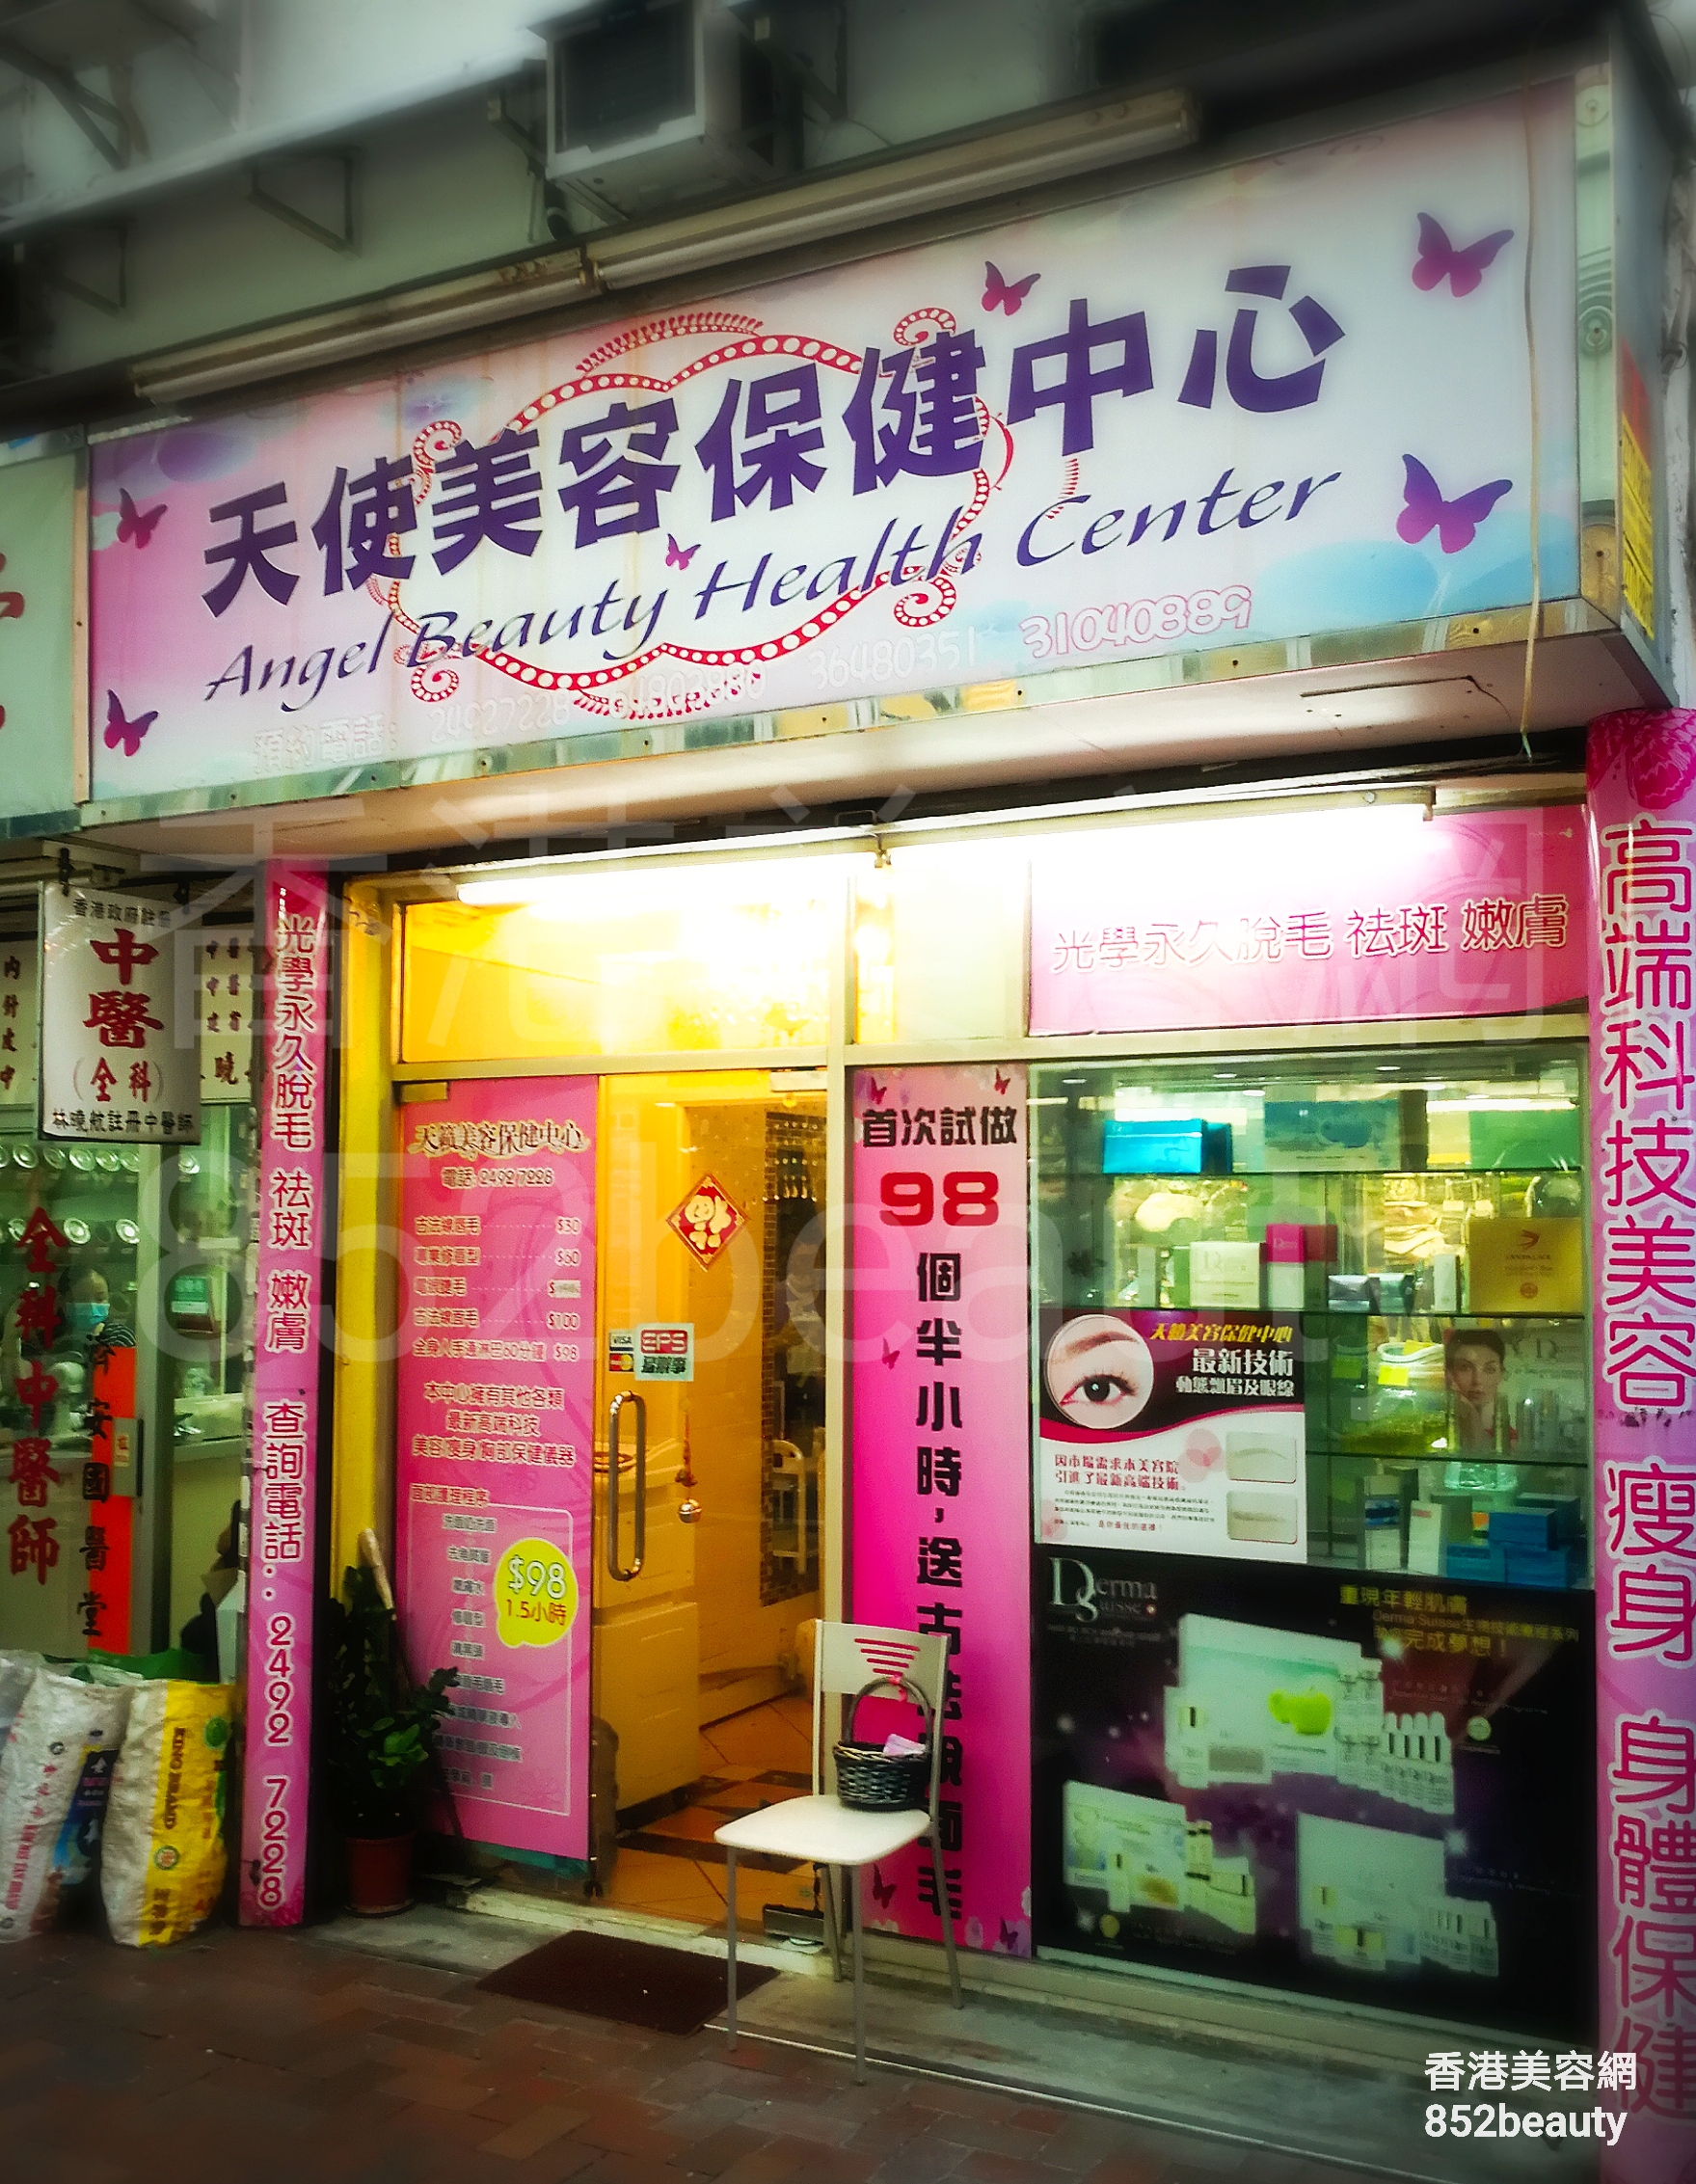 香港美容網 Hong Kong Beauty Salon 美容院 / 美容師: 天使美容保健中心